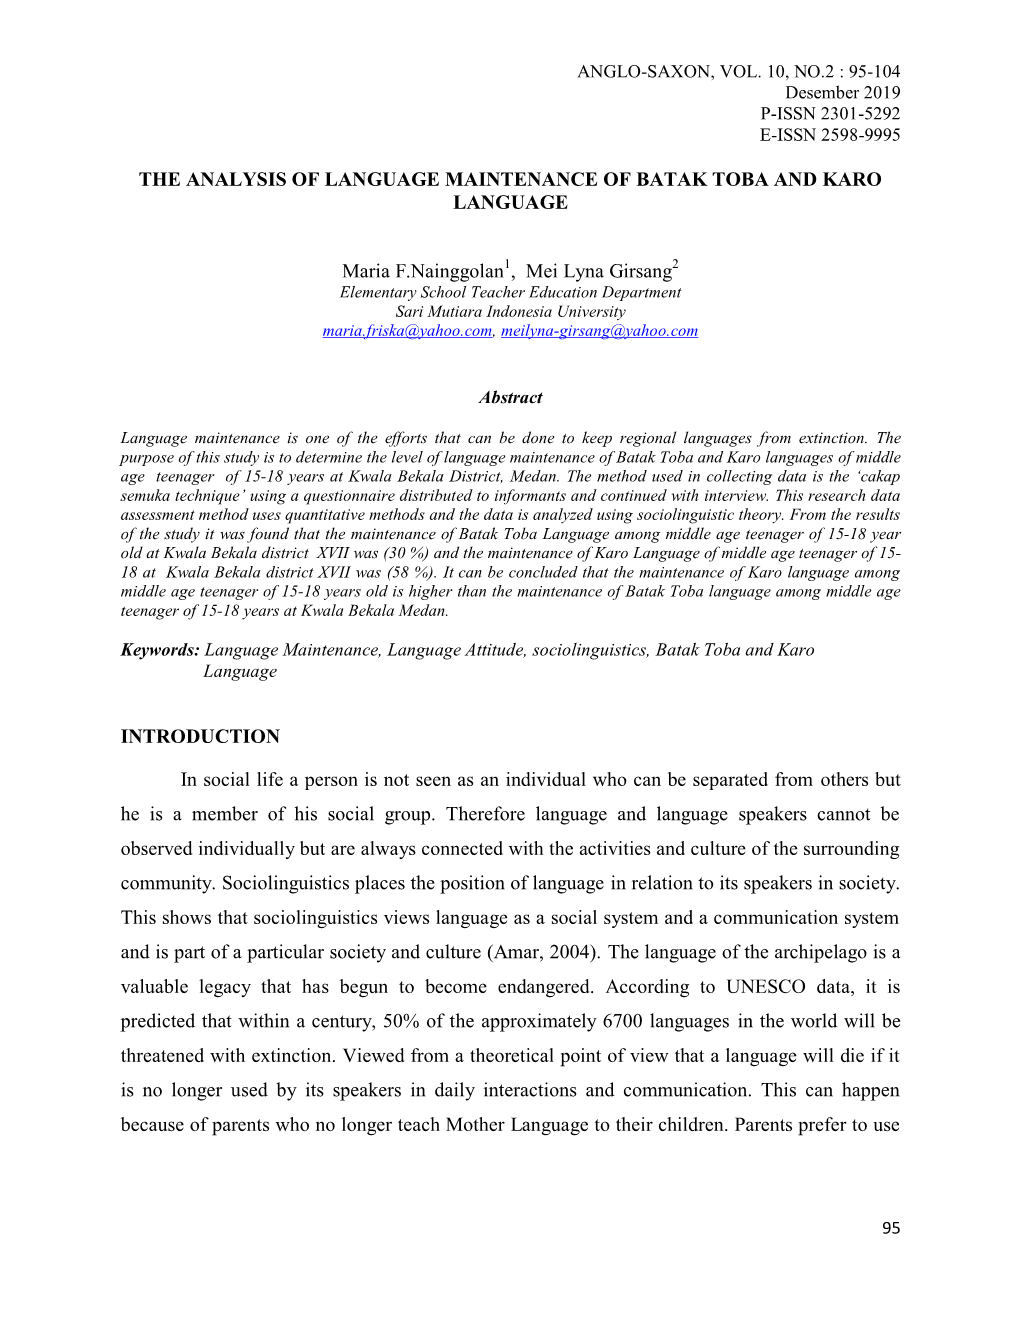 The Analysis of Language Maintenance of Batak Toba and Karo Language